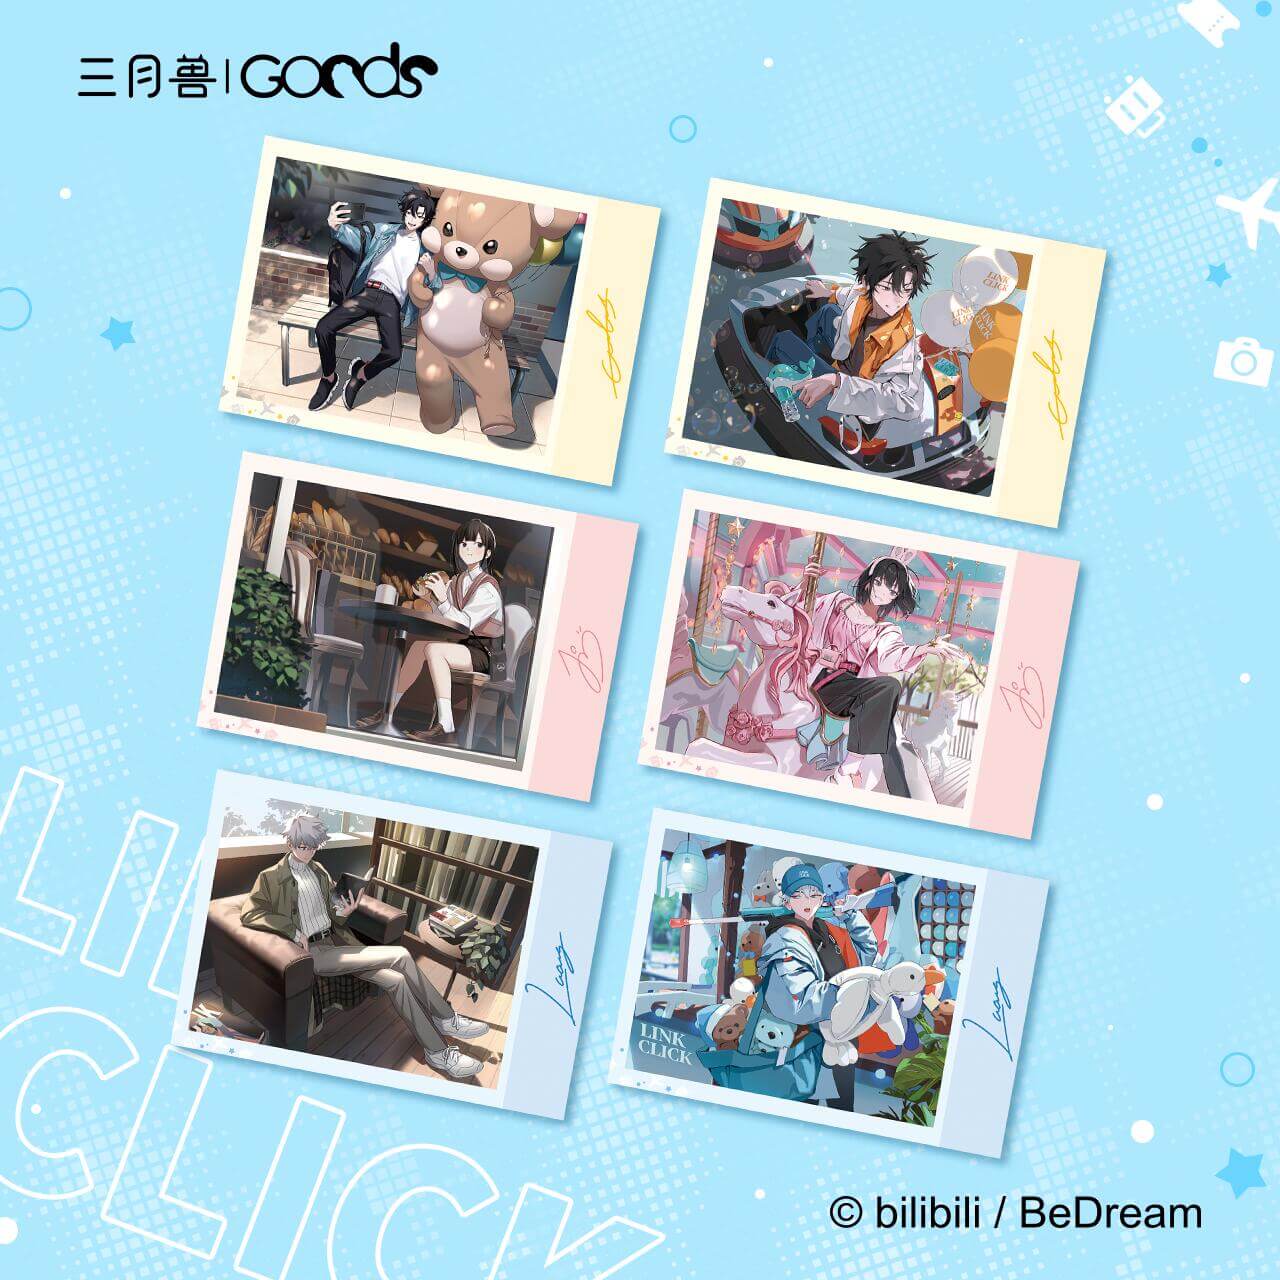 Link Click REC Moment Polaroid Card